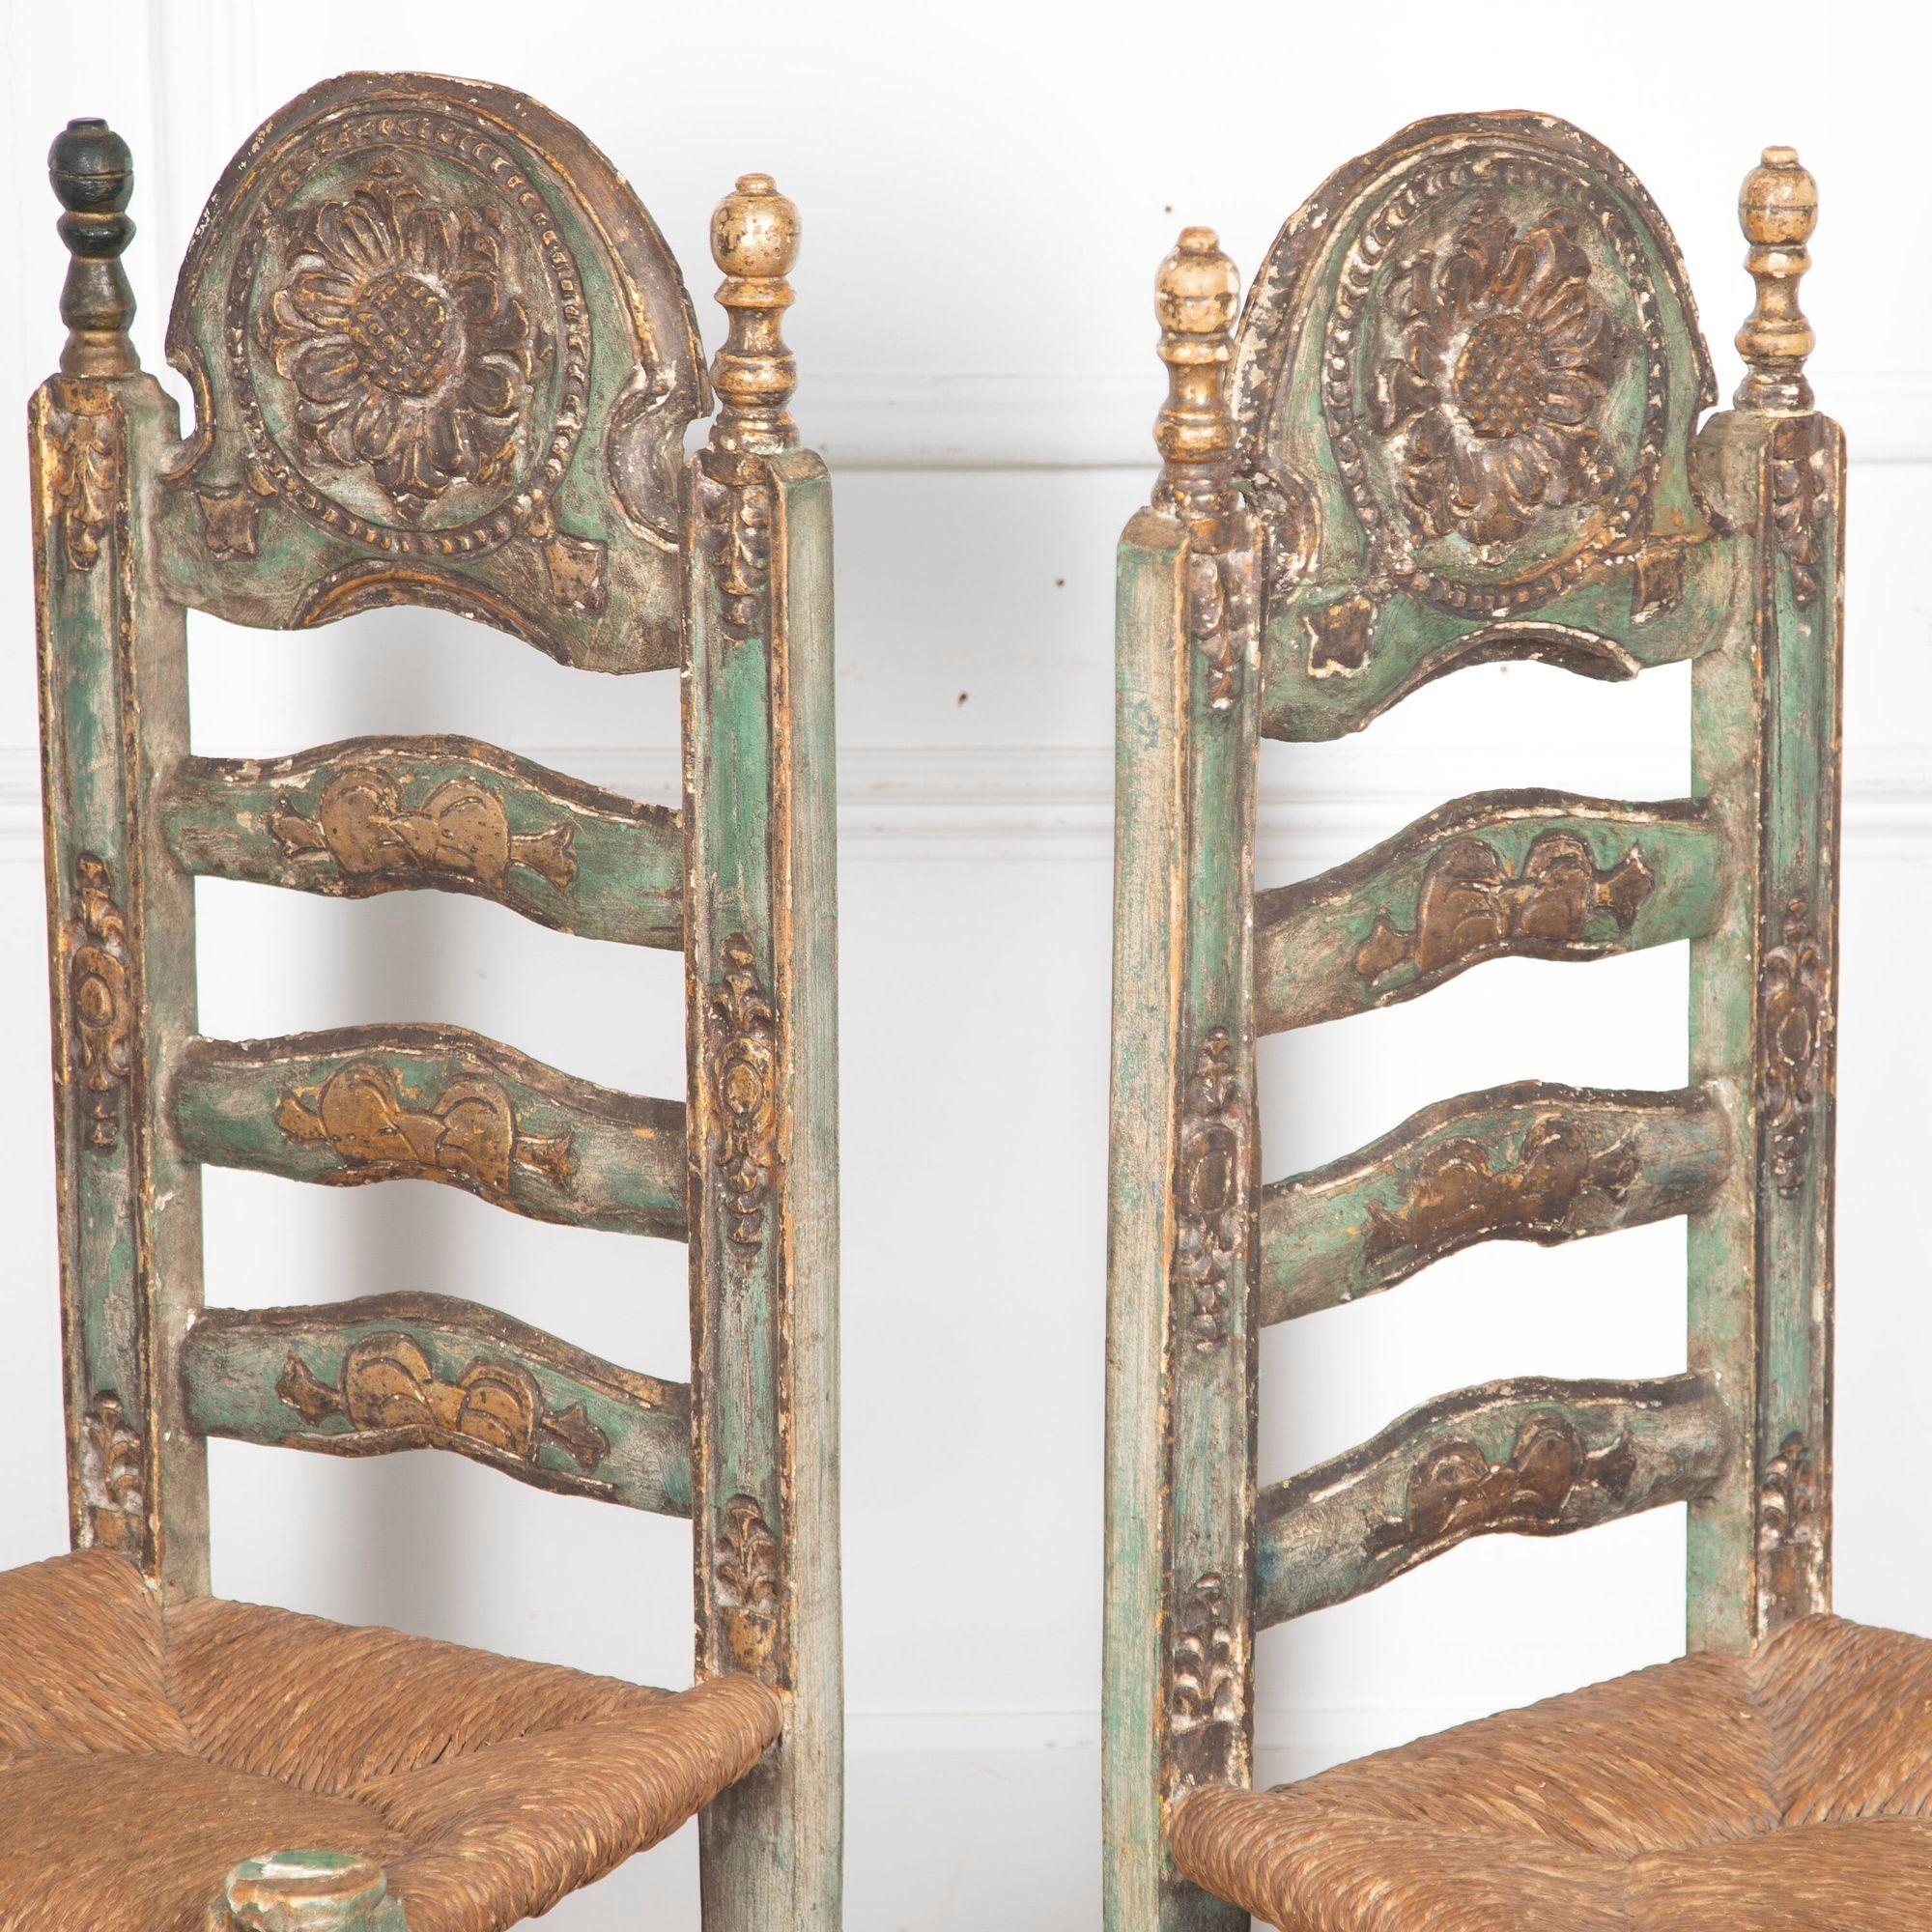 Fabuleux ensemble de six chaises à haut dossier polychrome du début du 20e siècle, avec assise en paille.
Chacun d'entre eux comporte un écusson en relief sur l'appui-tête, magnifiquement sculpté d'un tournesol. Le dossier ouvert en forme d'échelle